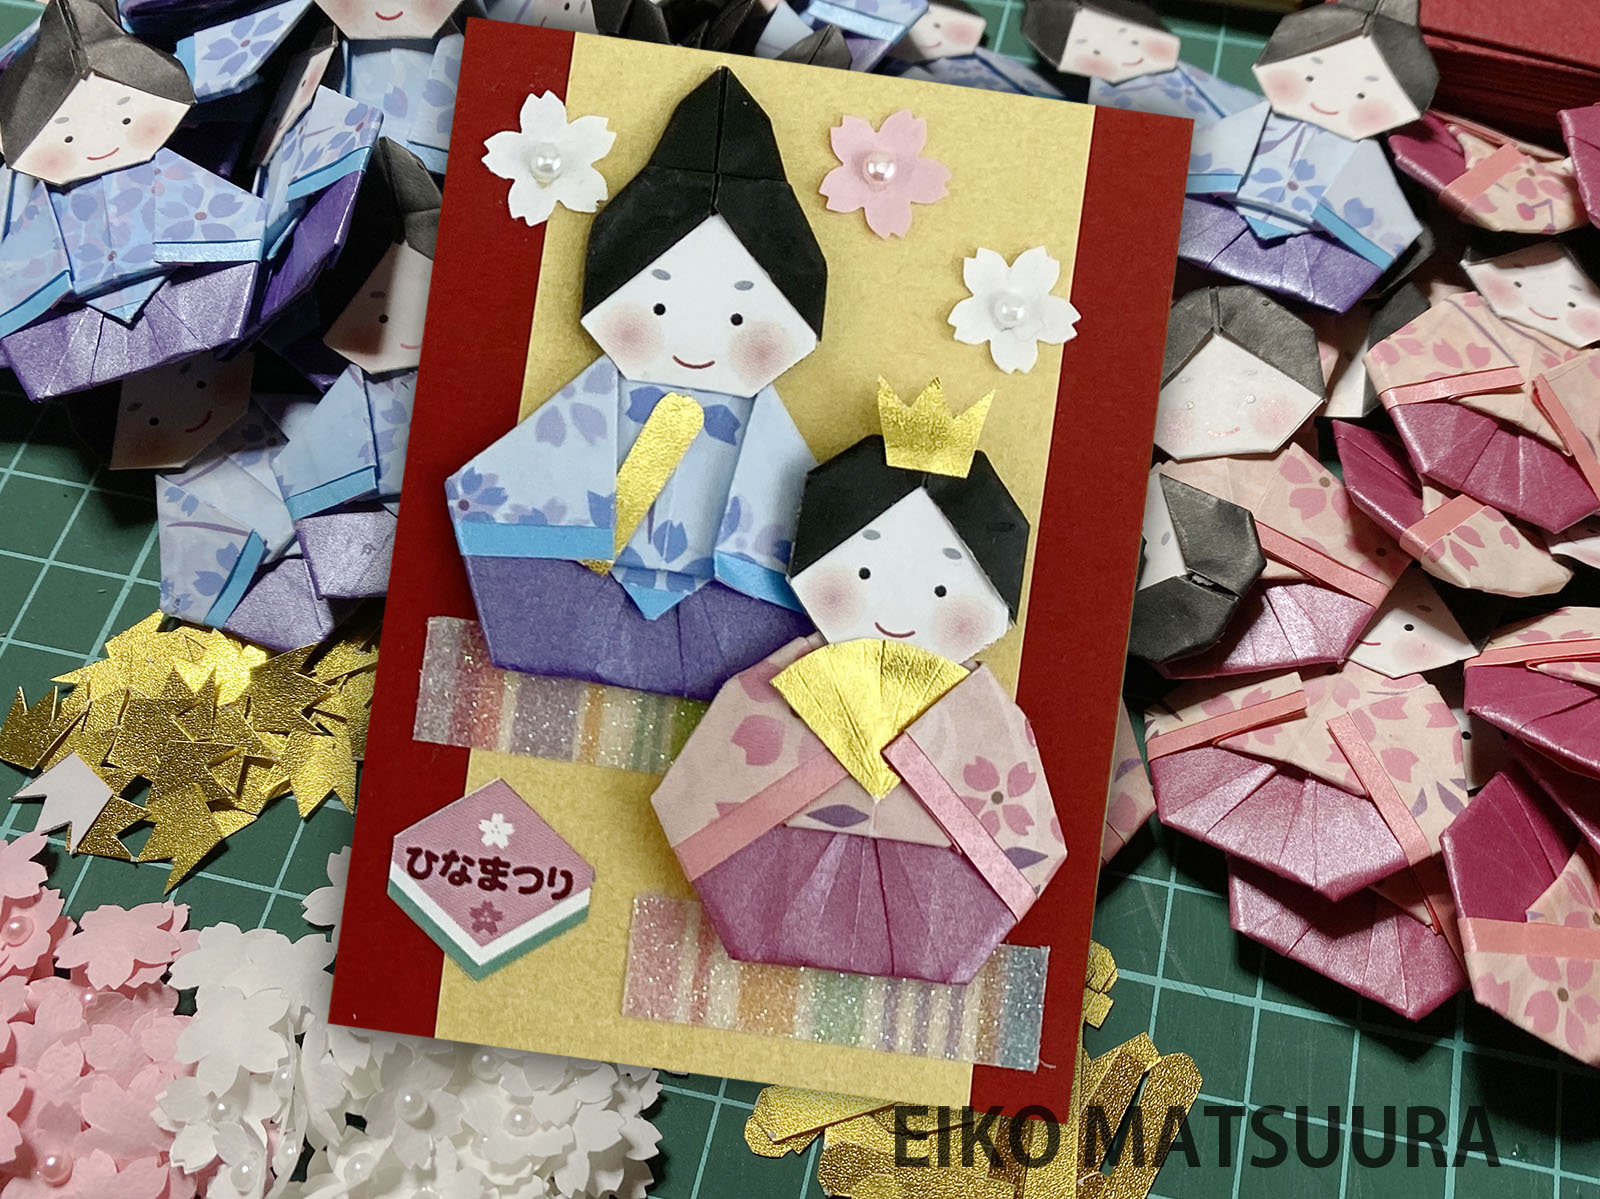 2022/05/28(Sat) 16:49「おひなさま　Hina Dolls for Peach Festival」松浦英子　Eiko Matsuura
（創作者 Author：おひなさま Hina Doll: 山口真 Makoto Yamaguchi,　製作者 Folder：松浦英子　Eiko Matsuura,　出典 Source：）
 2022年2月に開催された、OrigamiATC交換会に参加したカード。テーマは「2」でした。